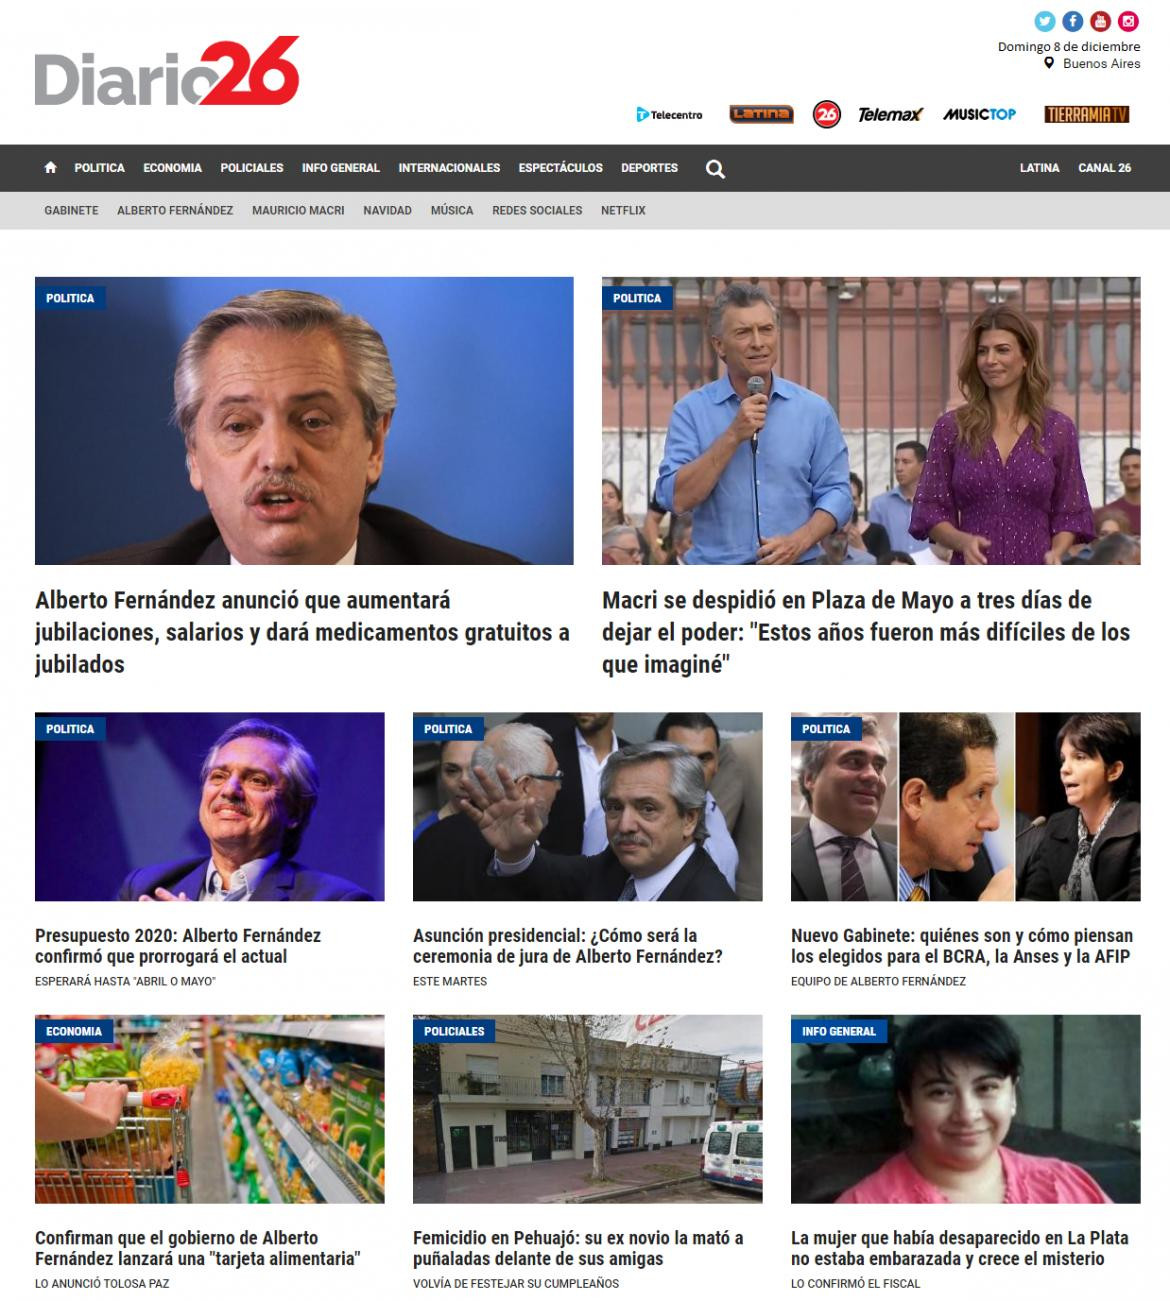 Tapas de diarios, Diario 26, domingo 8 de diciembre de 2019